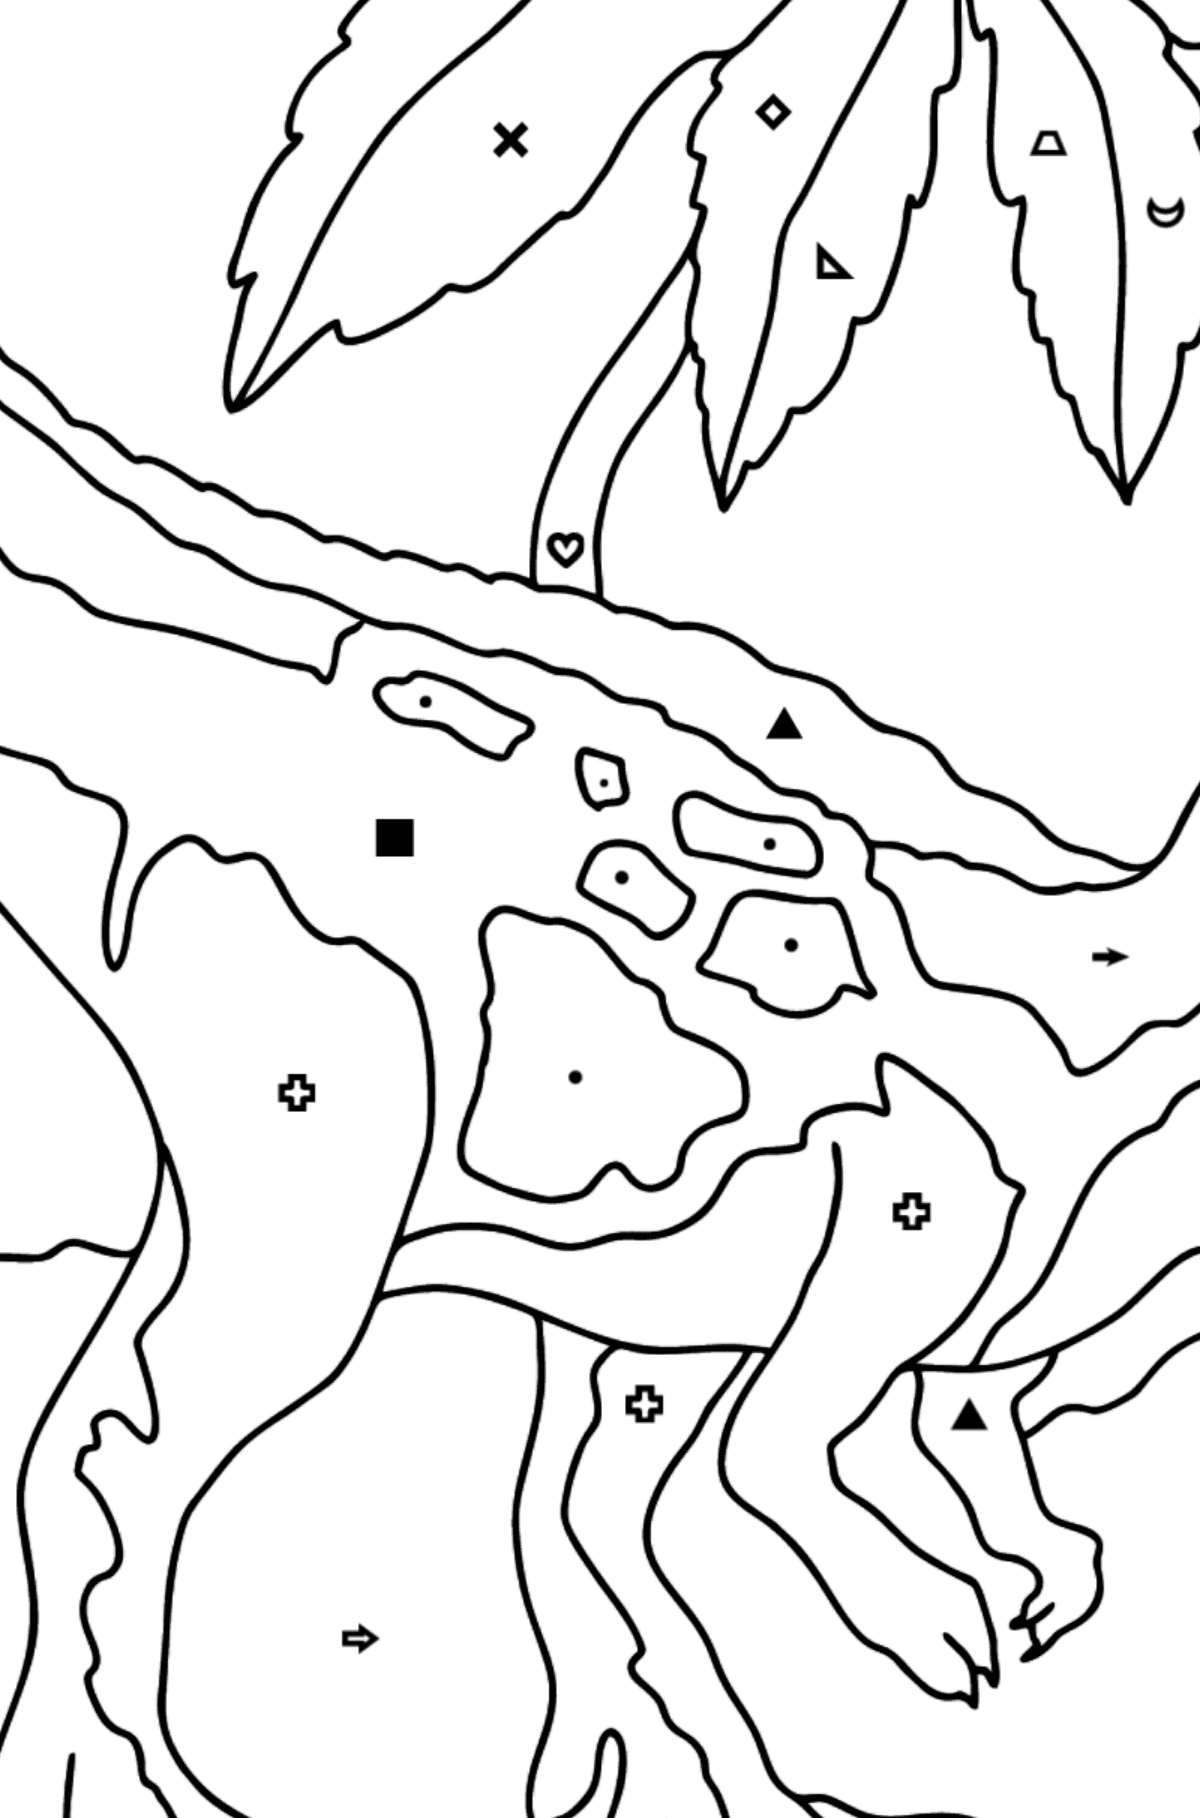 Desenho para colorir do predador tiranossauro (difícil) - Colorir por Símbolos para Crianças